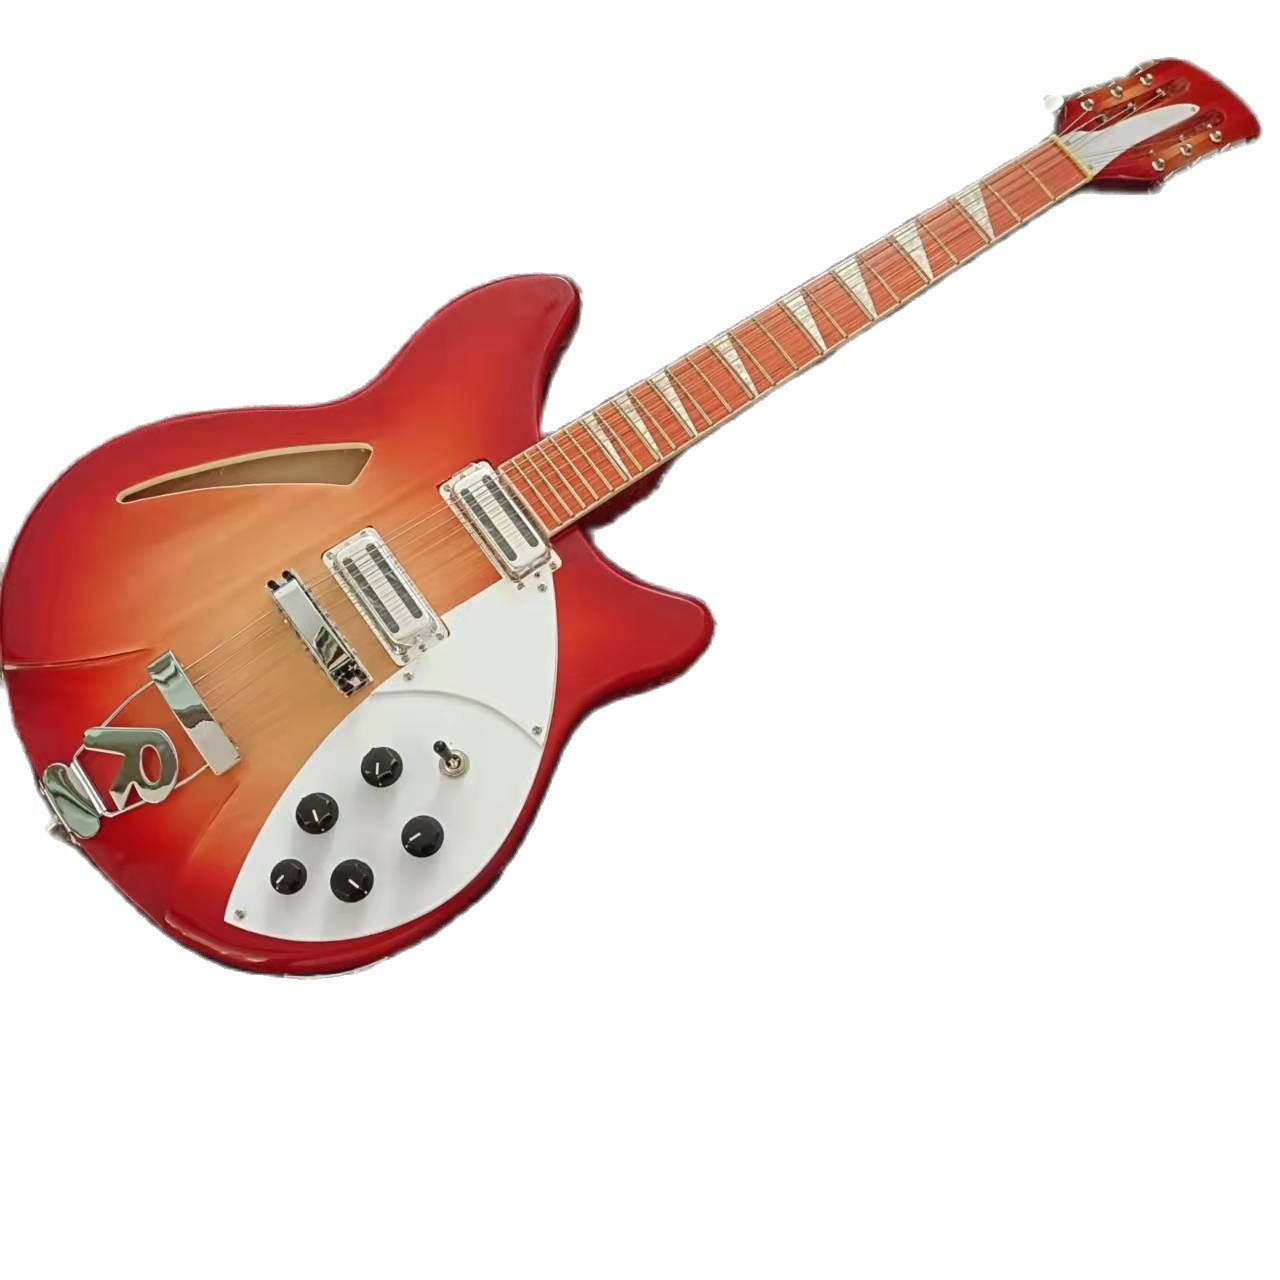 Modell 360 Gitarre.